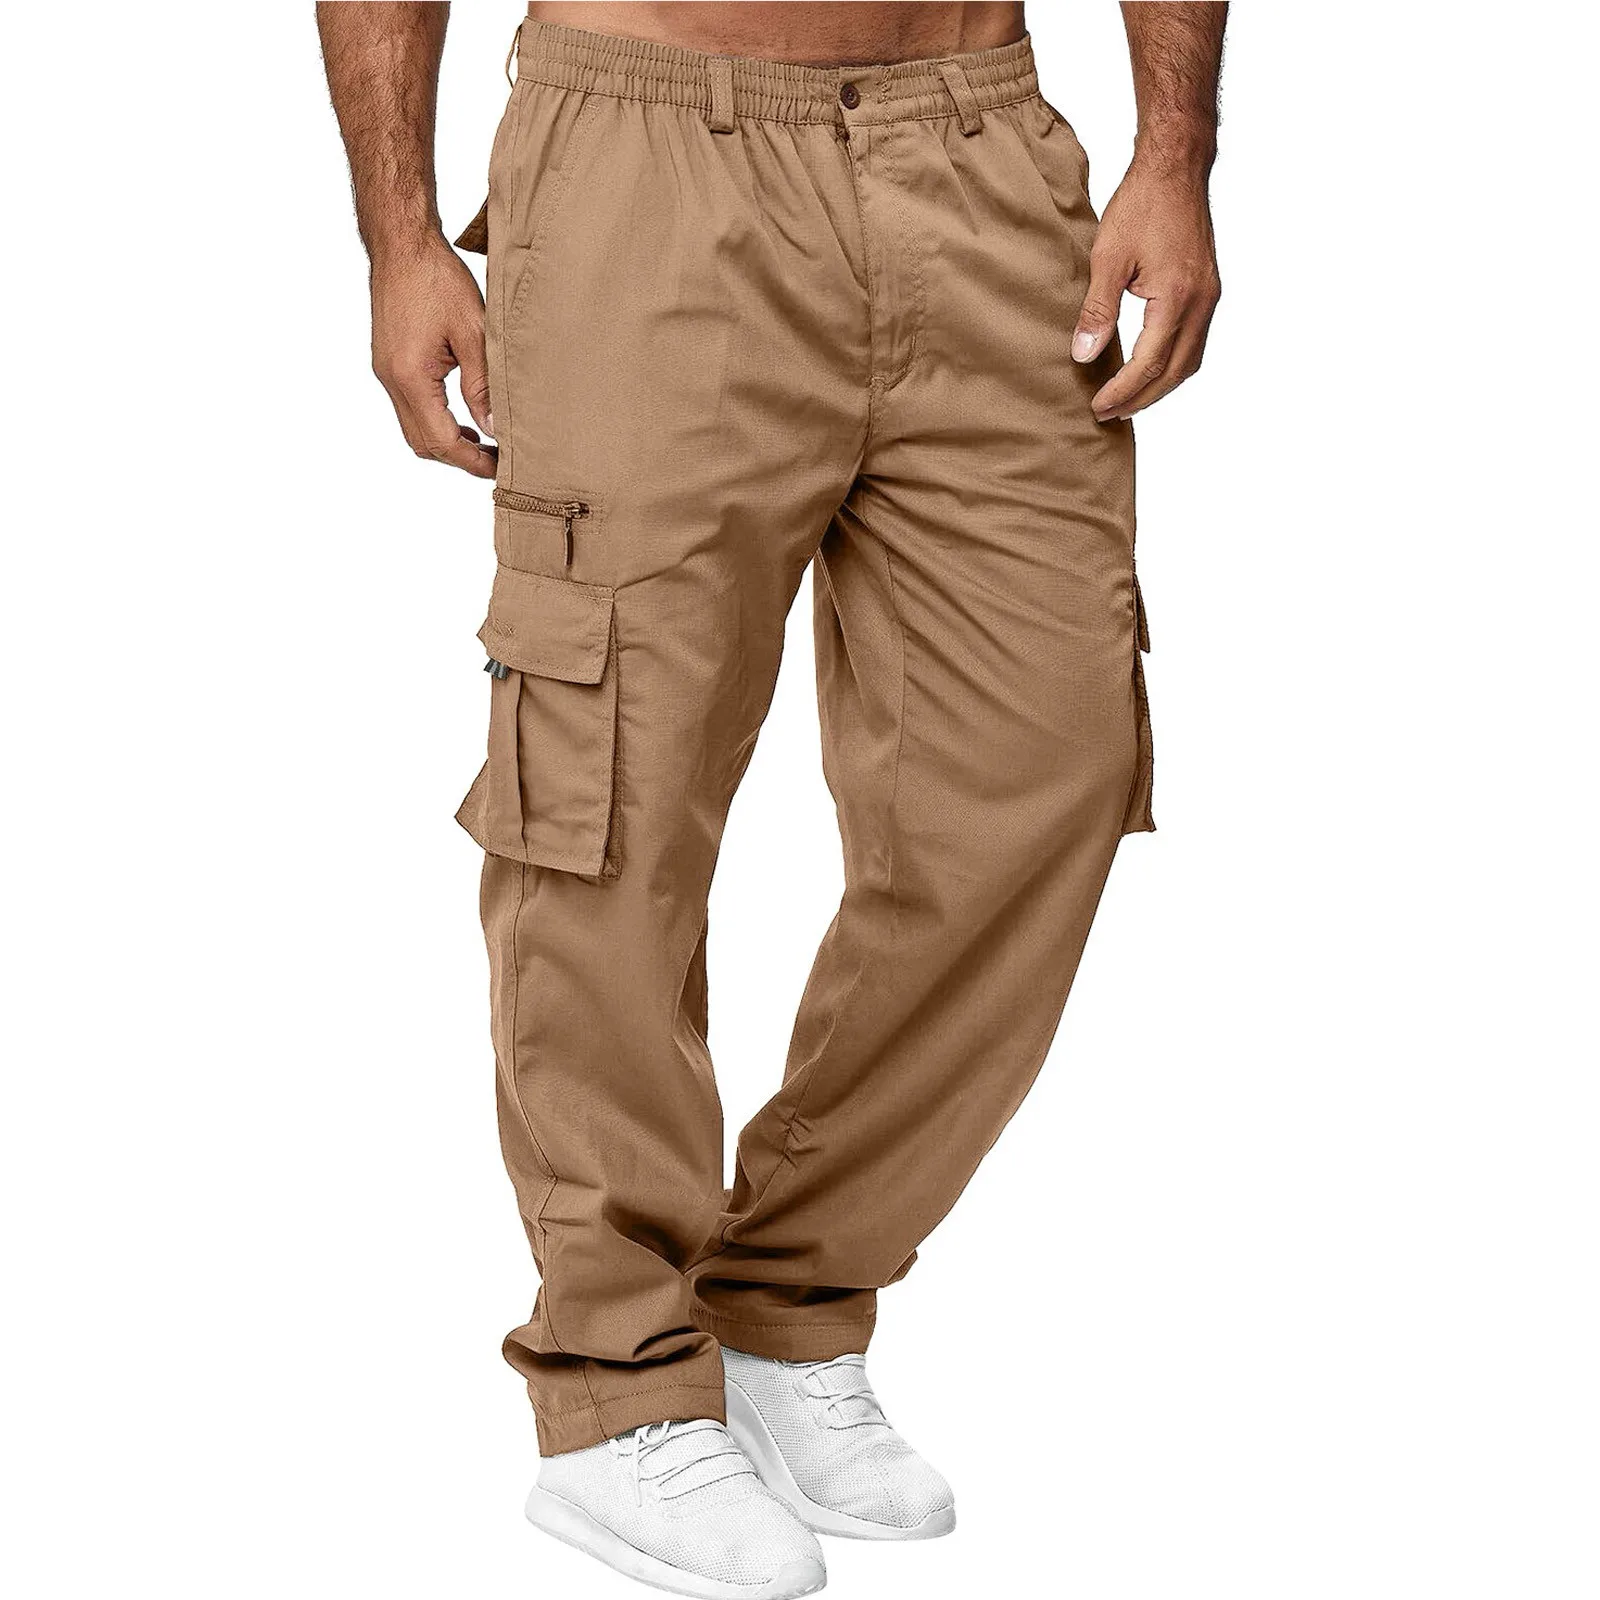 2023 Homens de Calças Cargo Plus Size Cavallari Multi Bolsos de Calças Casuais Masculinos Corredores Cintura Elástica Calças Pantalones Hombre